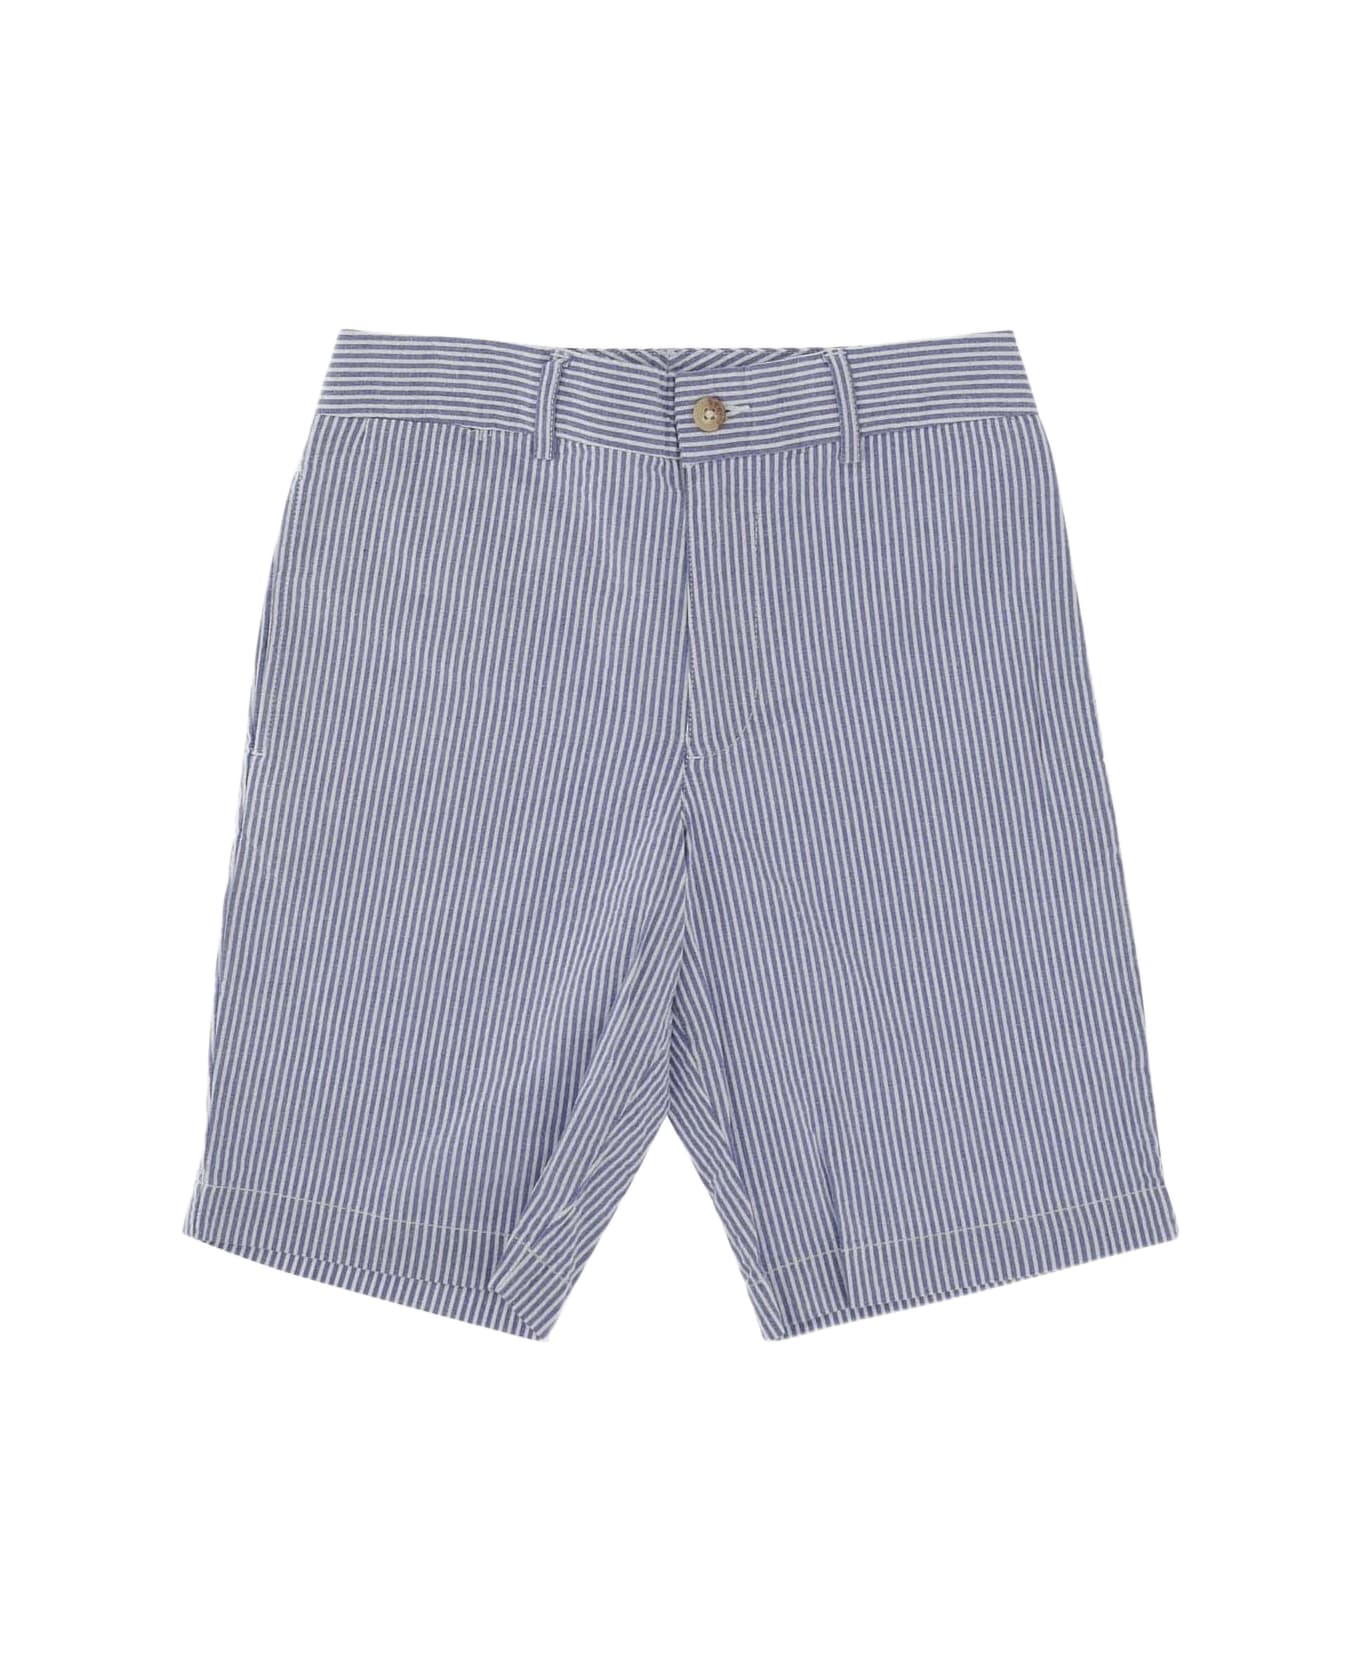 Polo Ralph Lauren Striped Stretch Cotton Short Pants - Blue